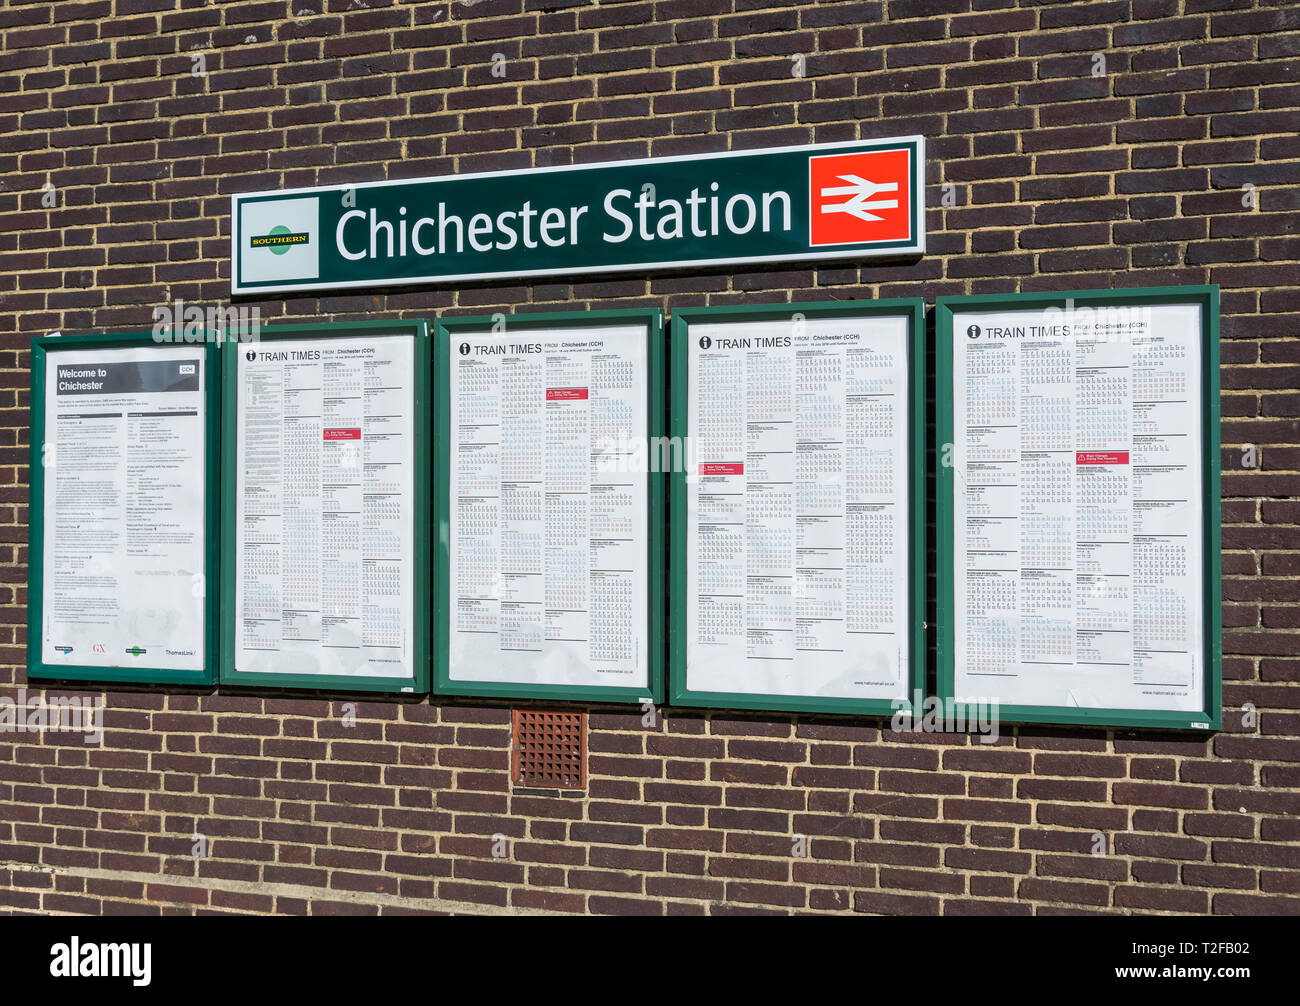 Zug mal auf einer Bahn Fahrplan Bahnhof in Chichester, West Sussex,  England, UK Stockfotografie - Alamy